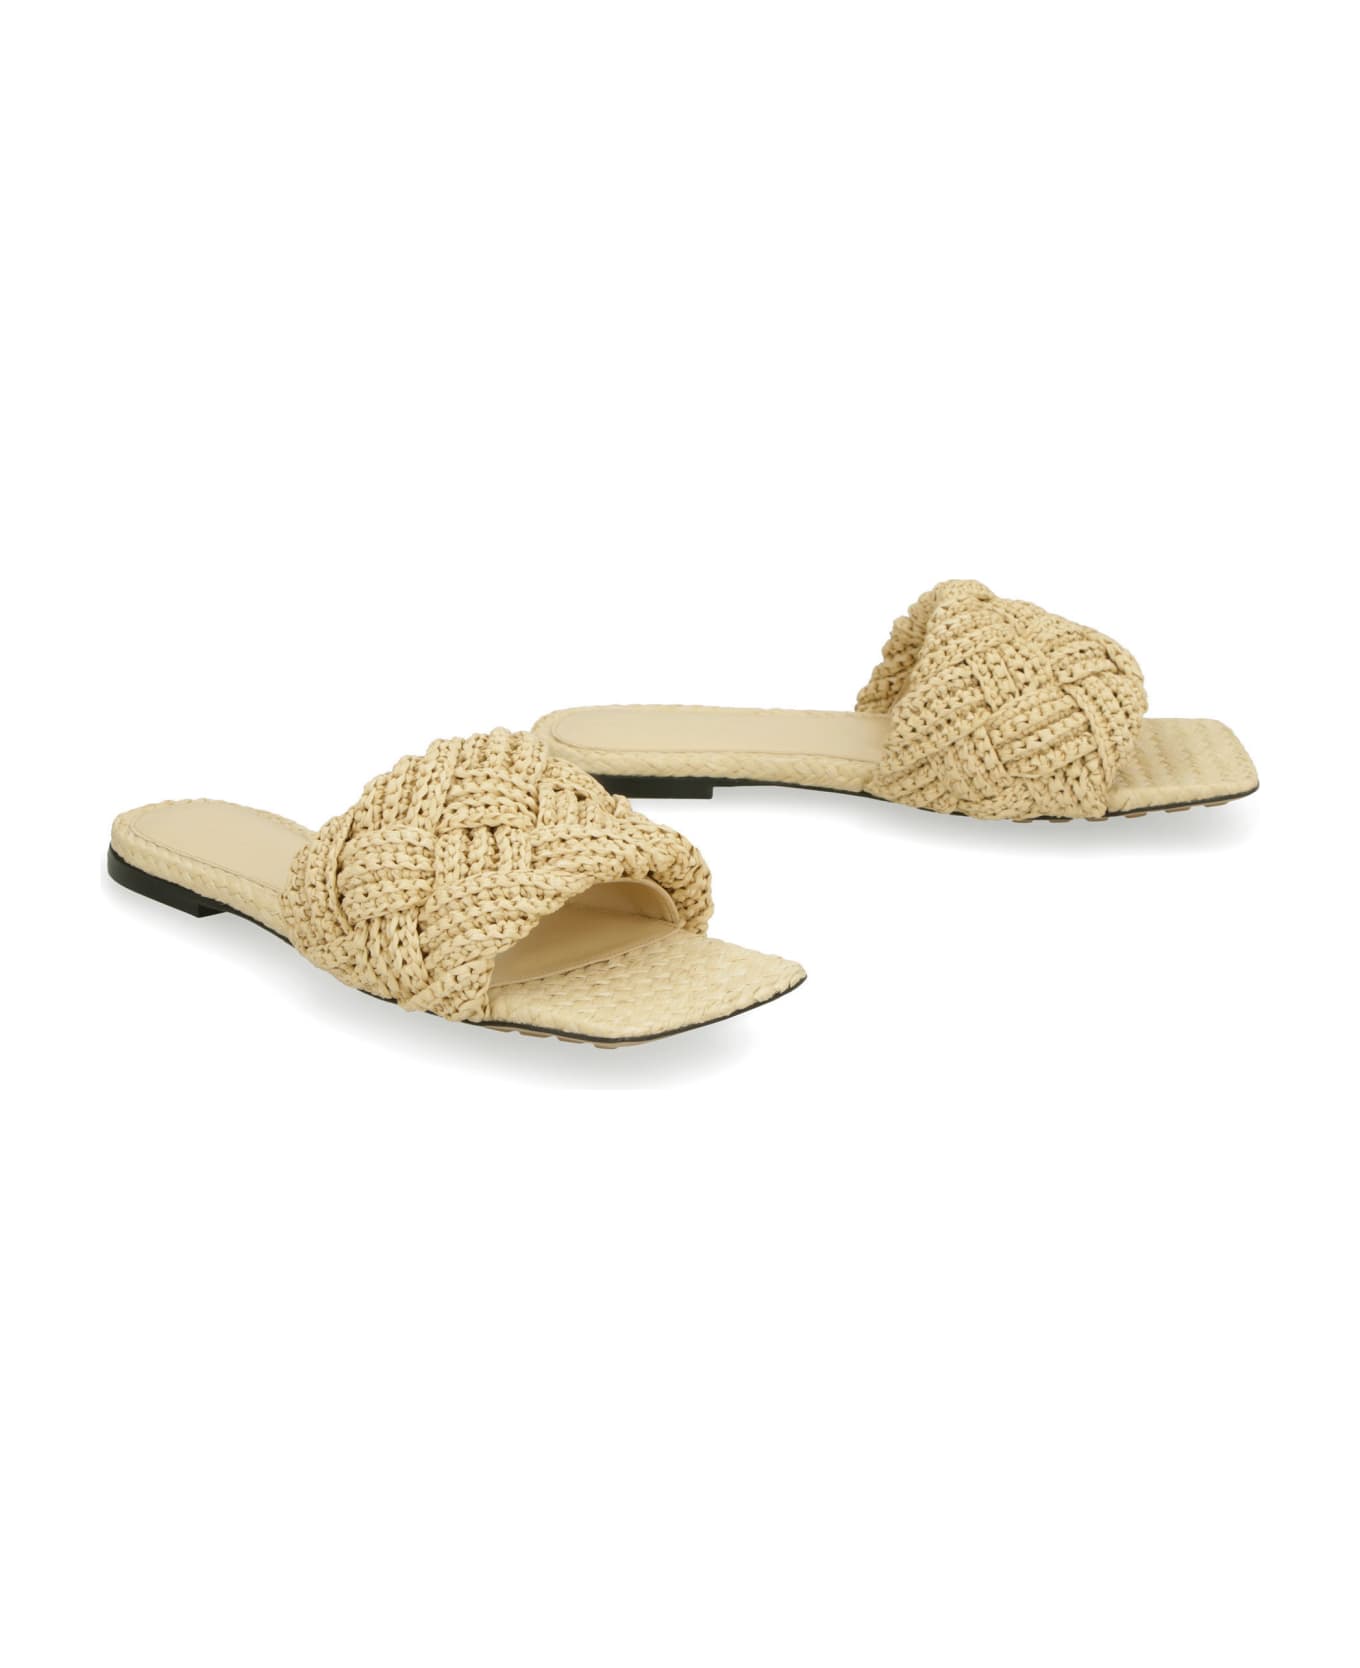 Bottega Veneta Lido Flat Sandals - Beige